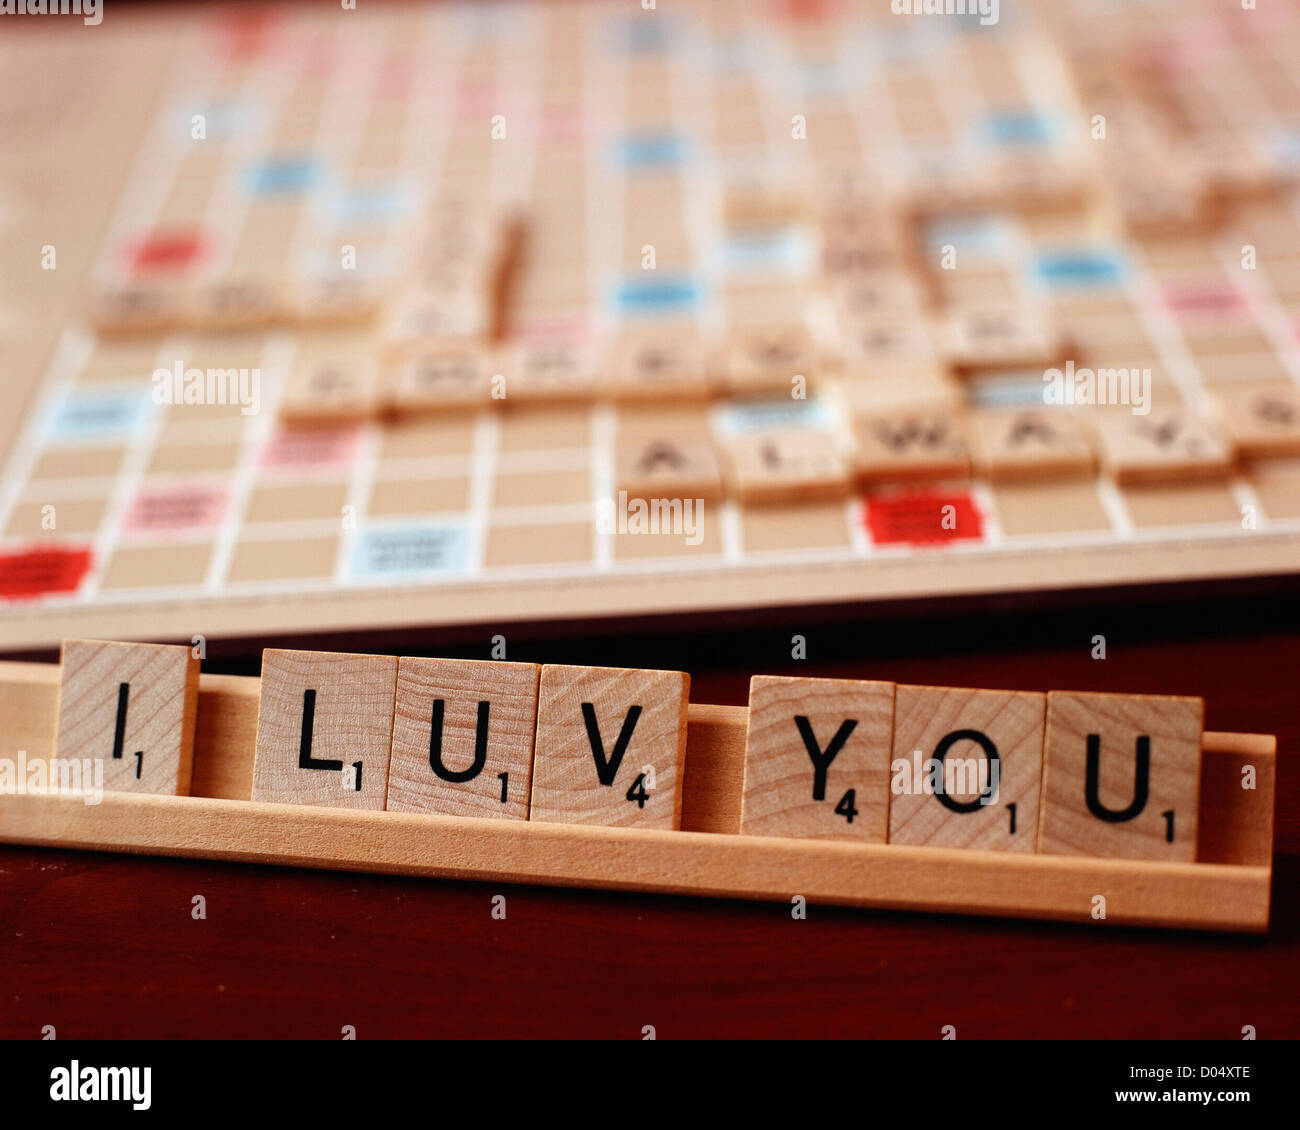 Lettre carreaux d'un type de mots croisés jeu de préciser la phrase 'J'aime'. Banque D'Images